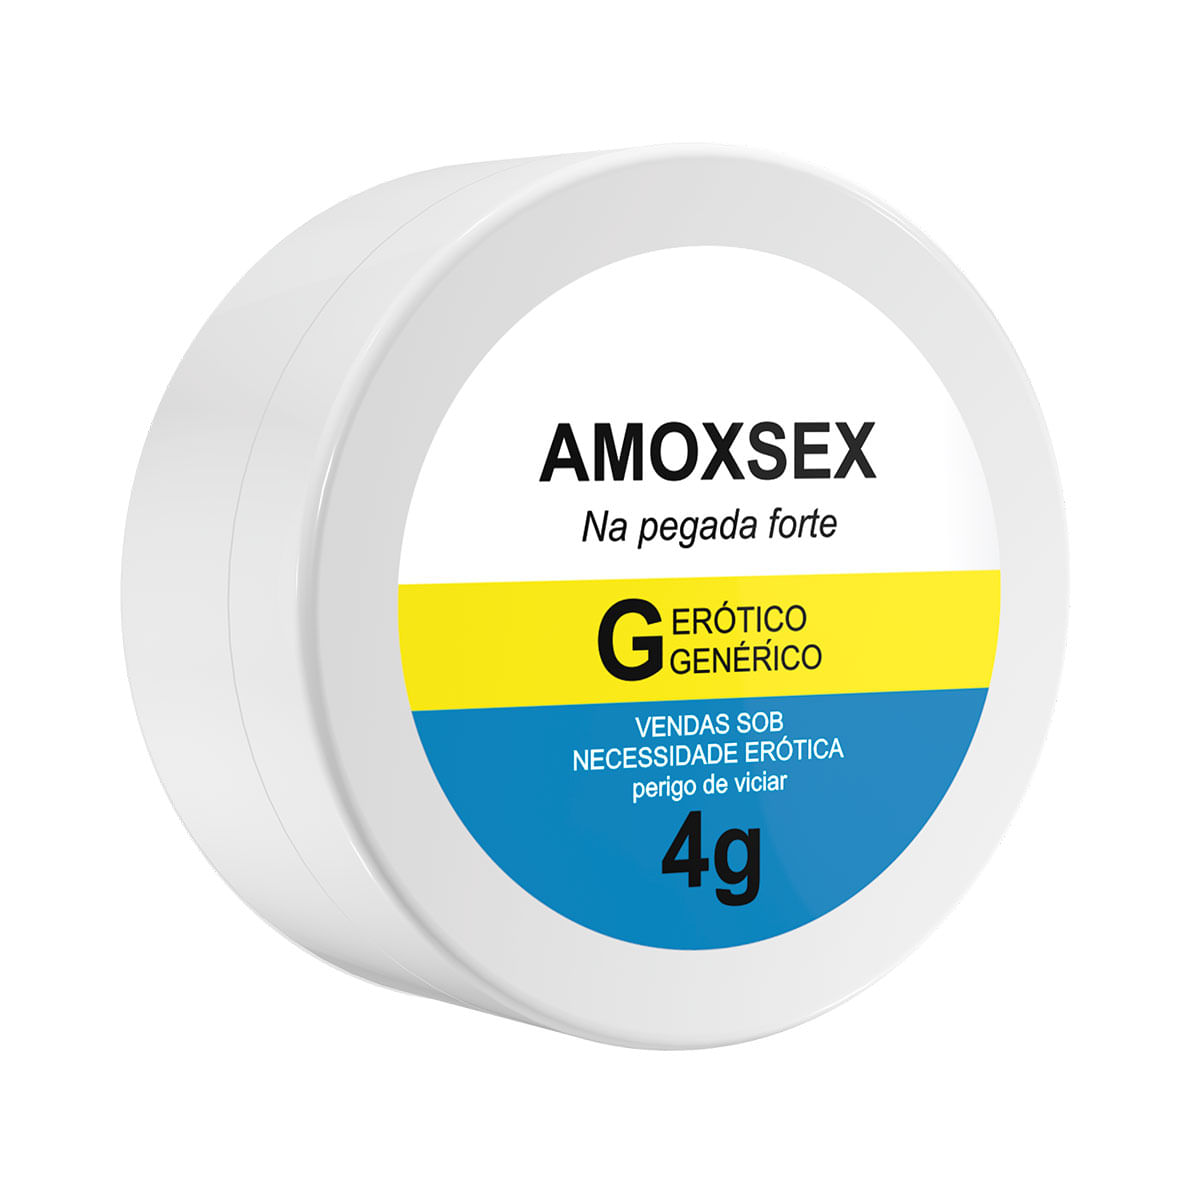 Amoxsex Creme Dessensibilizante Anal 4g Linha Farmacinha do Riso Secret Love